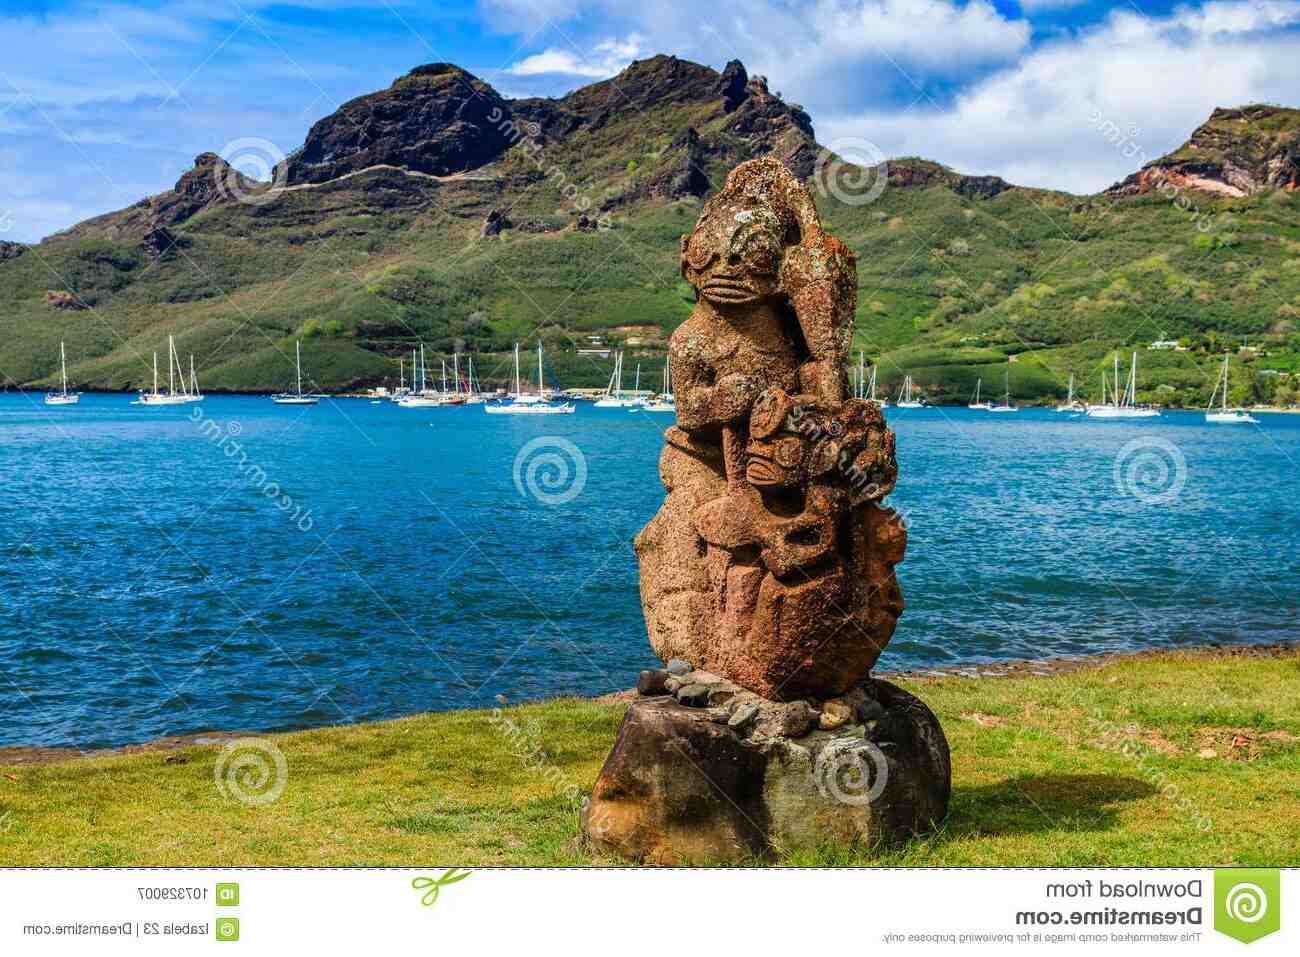 Care este cea mai frumoasă insula din Polinezia Engleza?